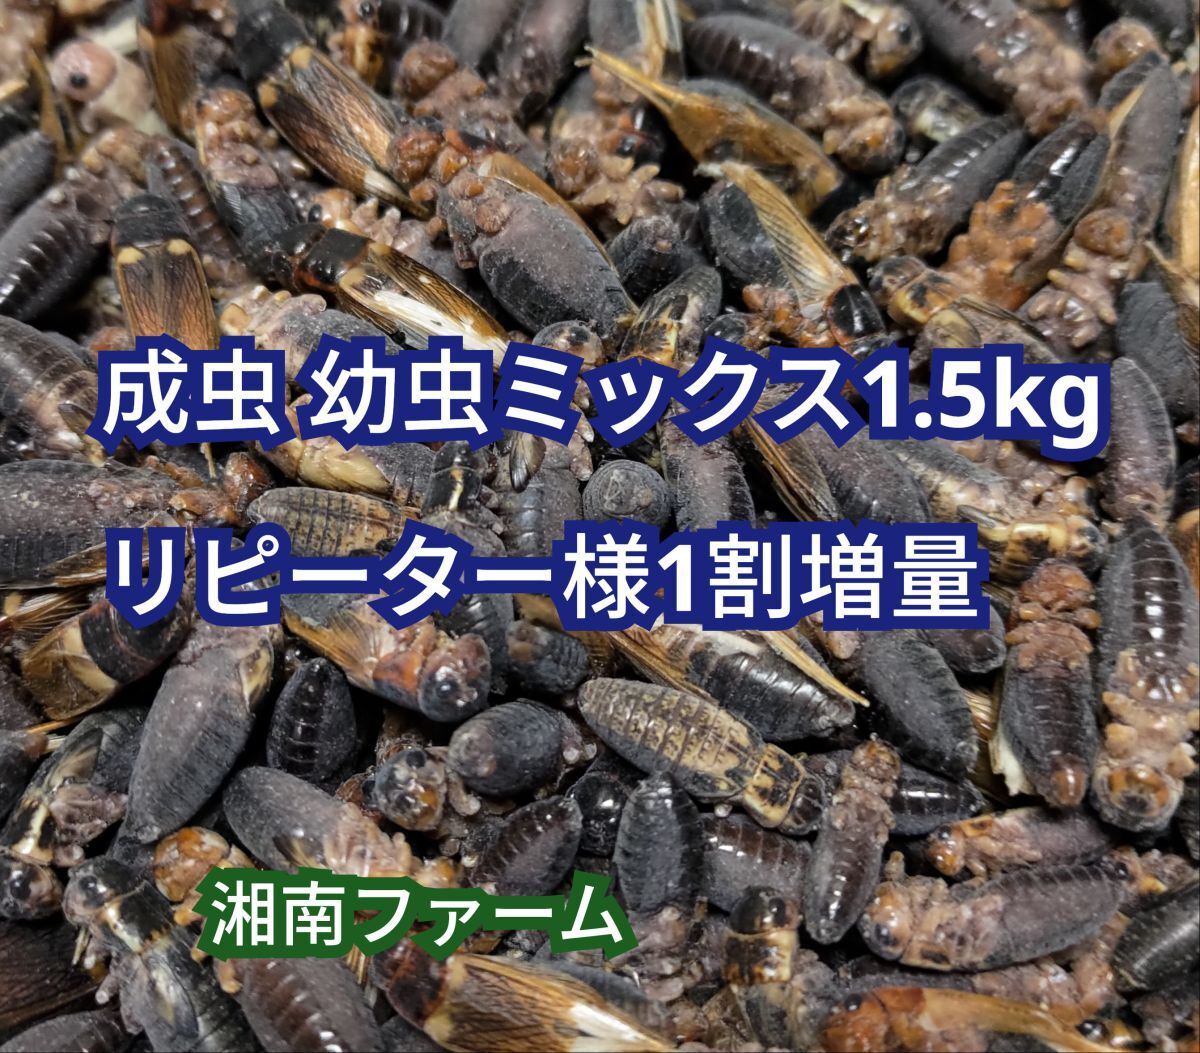 成虫 幼虫ミックス 1.5kg 冷凍 コオロギ 脚部除去済 ★リピーター様1割増量_画像1